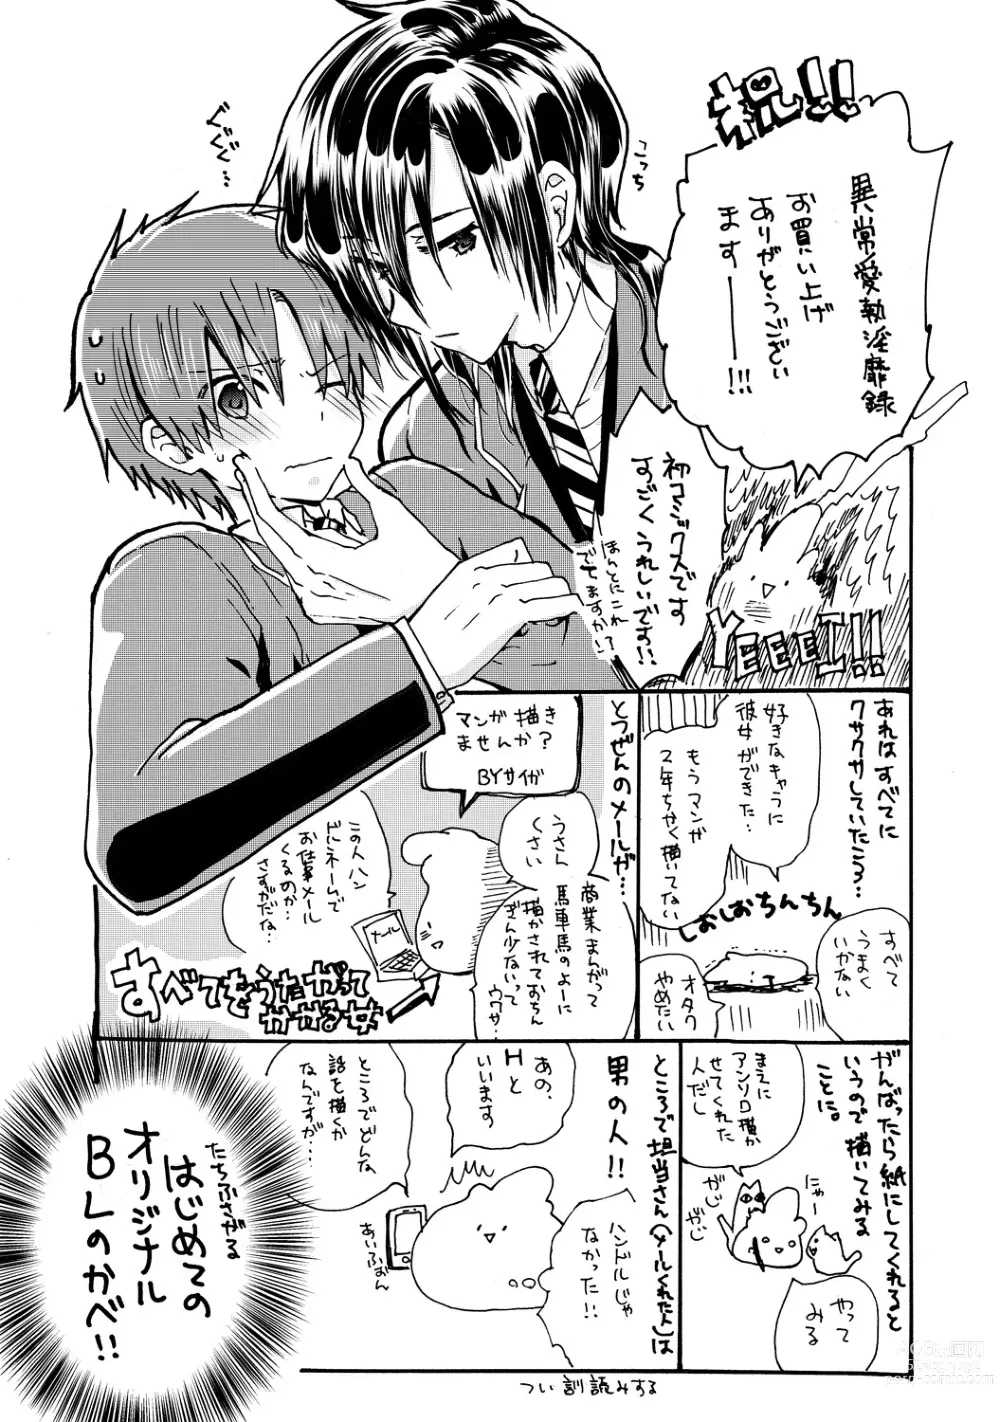 Page 192 of manga Ijou Aishuu Inbiroku [R18] [Digital]]